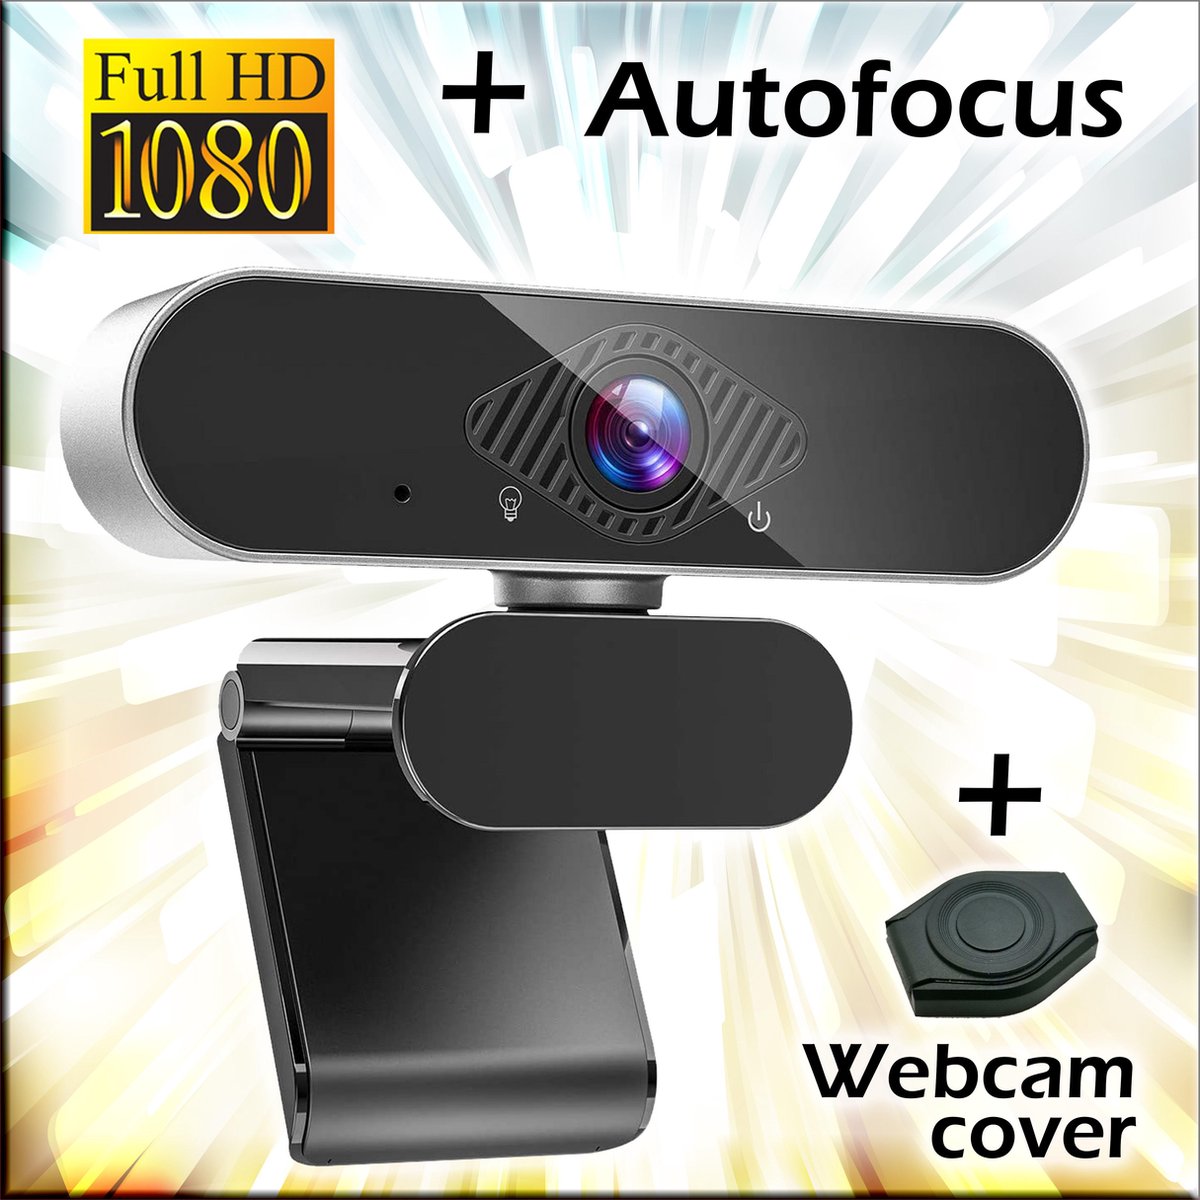 Webcam voor PC met microfoon - USB - 1080p / Full-HD - Autofocus - Incl. webcamcover / schuifje / webcam cover / privacy beschermer - Met ruisonderdrukking / noise cancelling